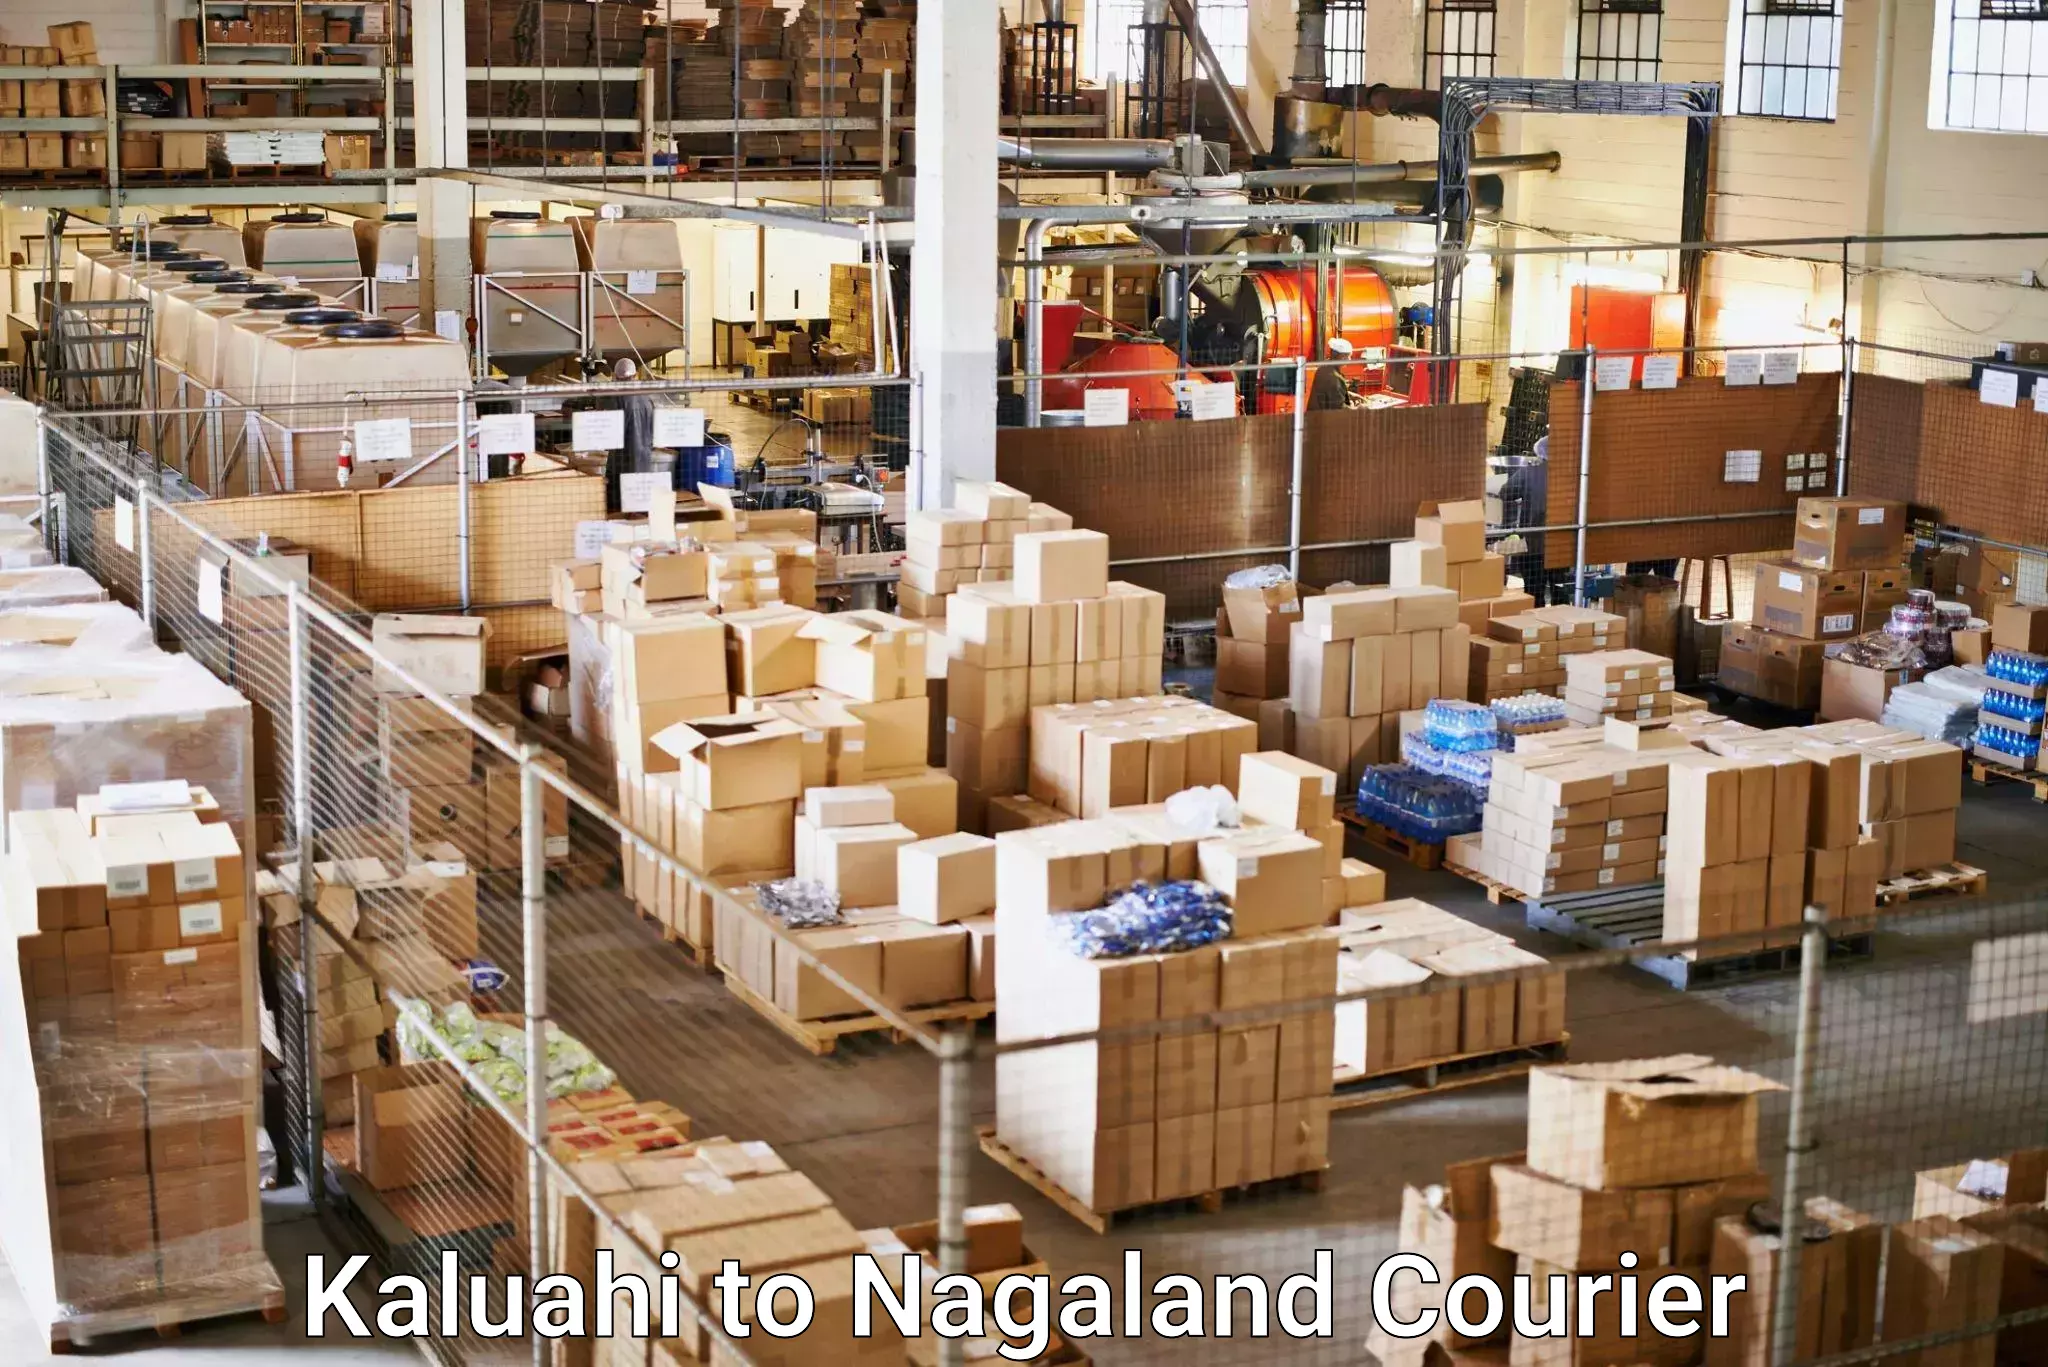 Advanced freight services Kaluahi to Wokha